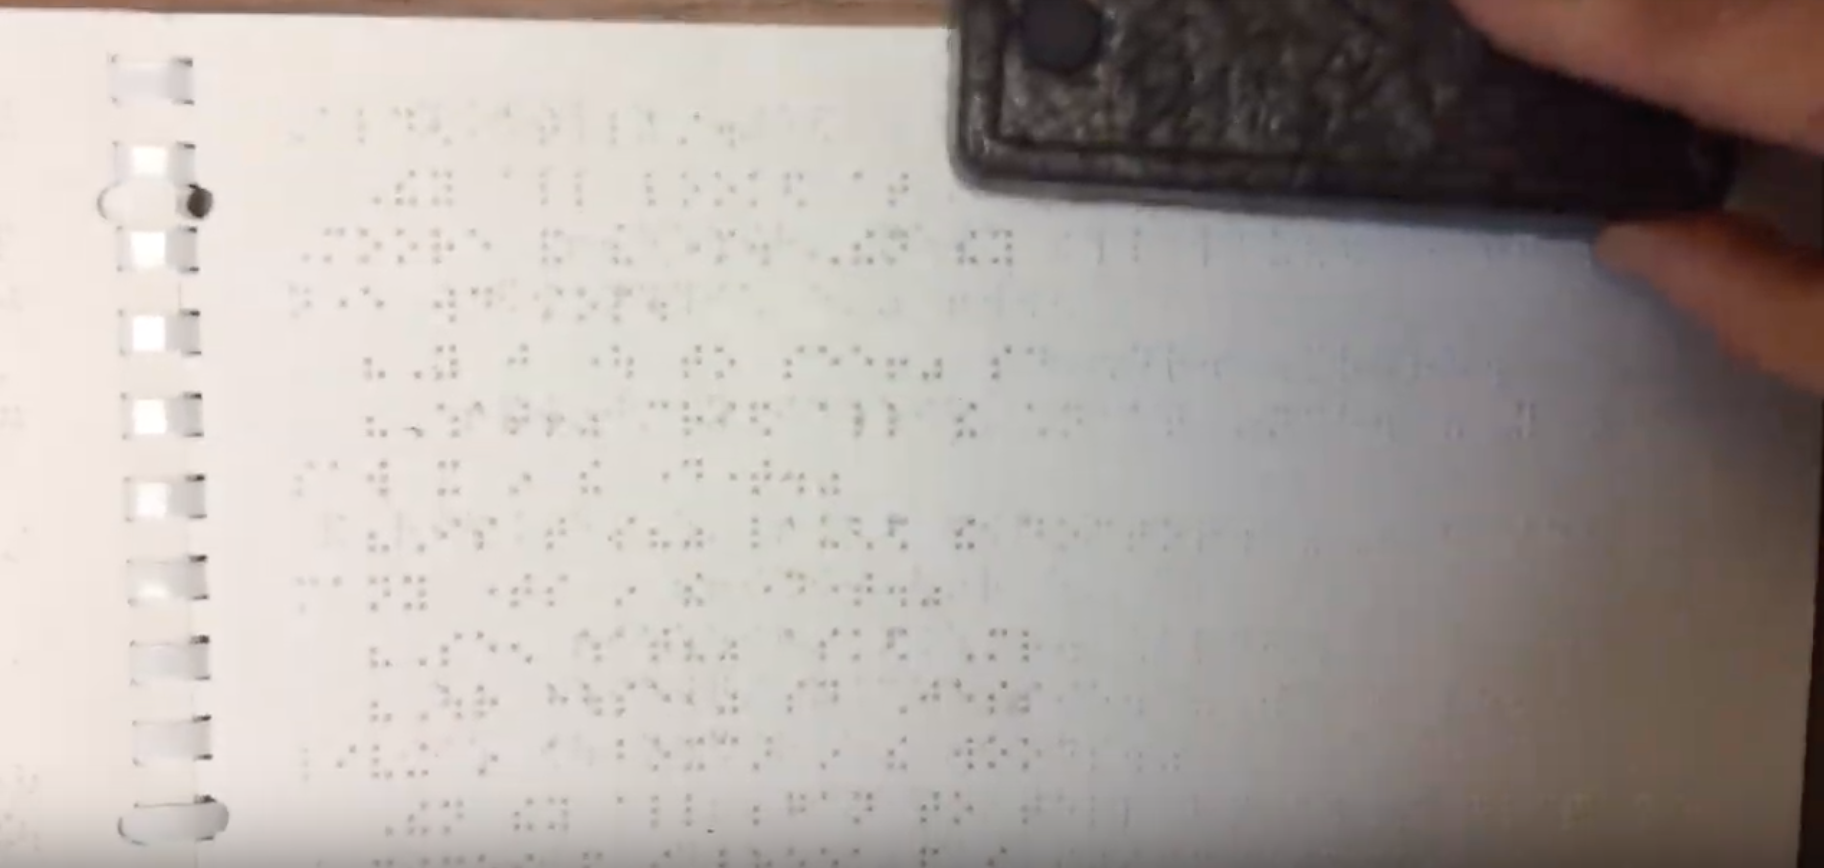 Dry eraser on interpoint braille book